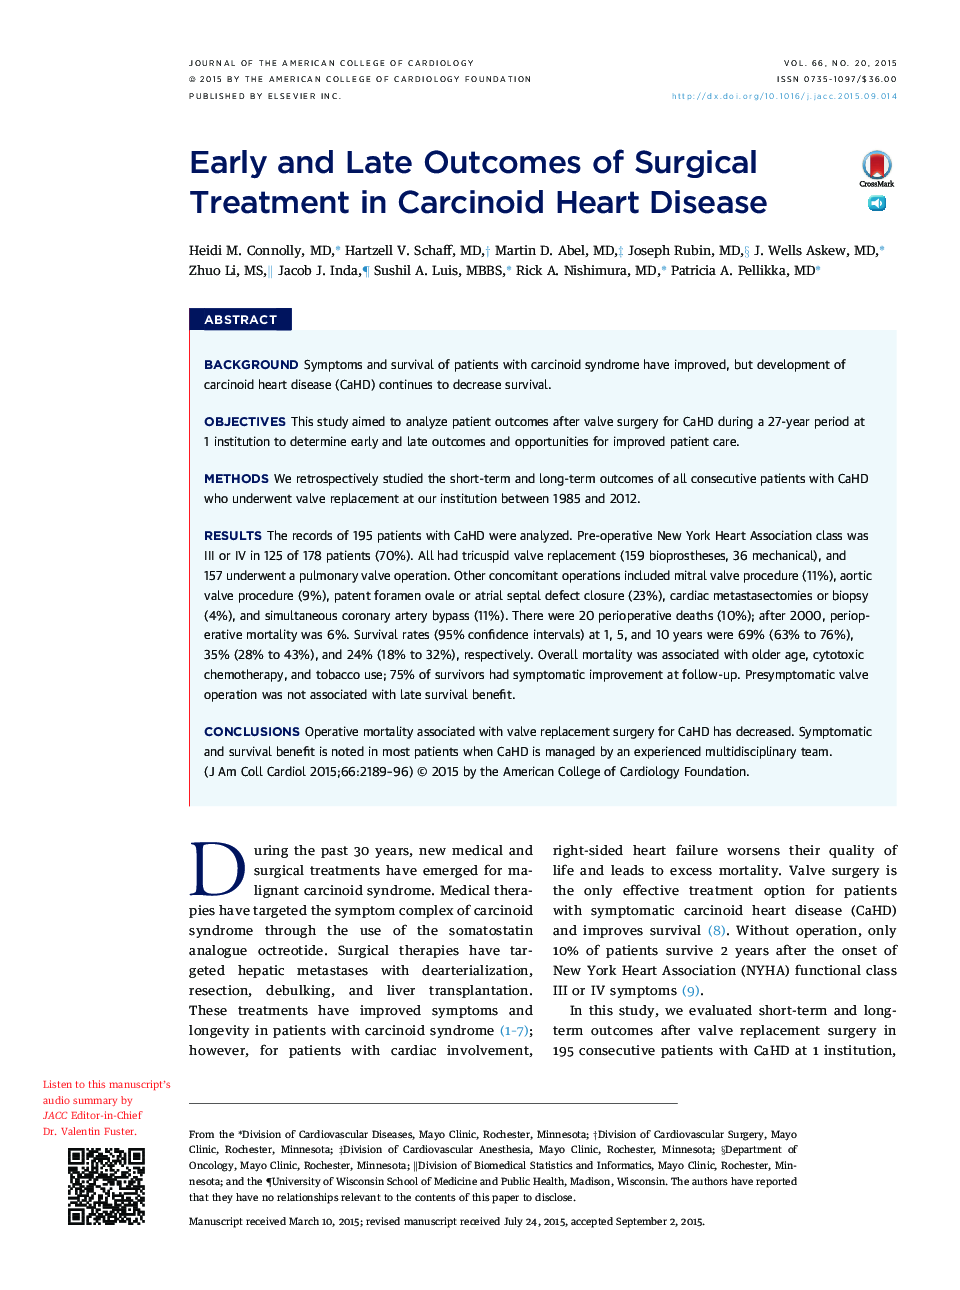 نتایج اولیه و اواخر درمان جراحی در بیماری قلبی کارسینوئید 